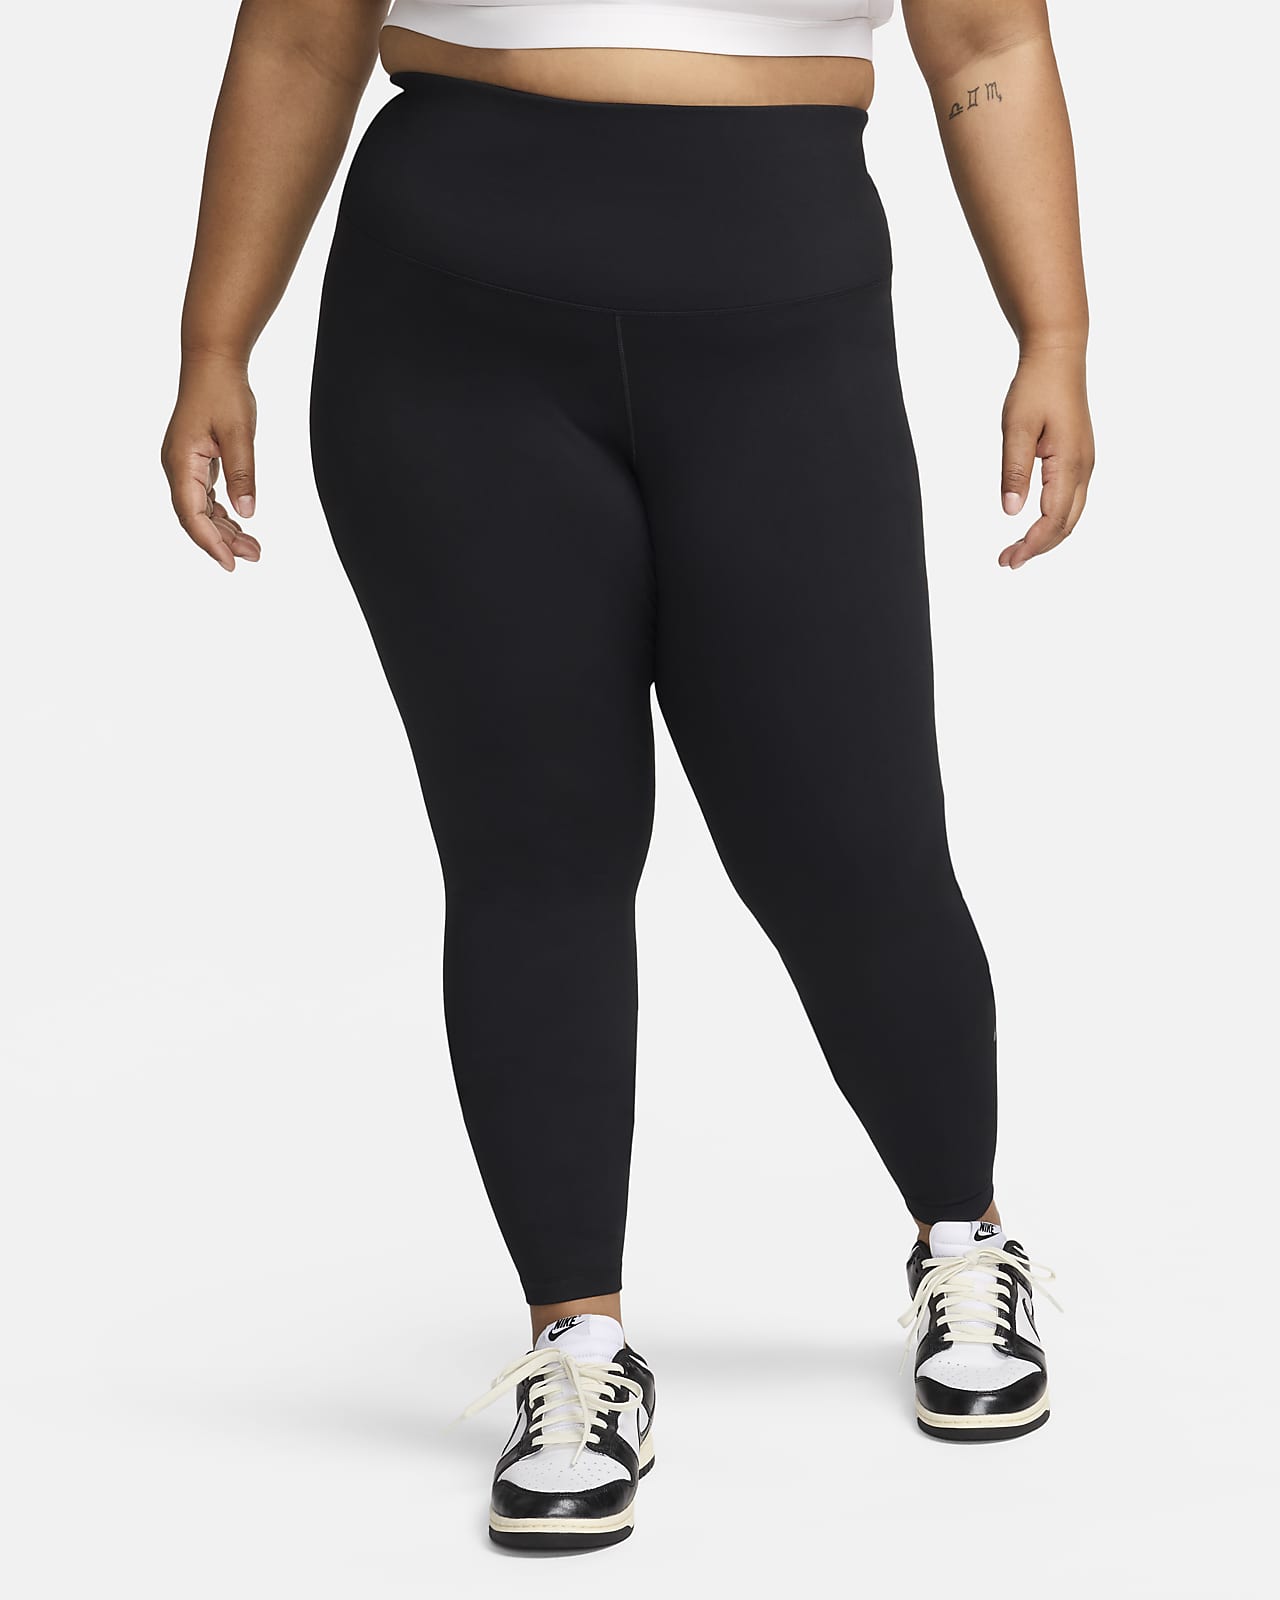 Nike One magas derekú, teljes hosszúságú női leggings (plus size méret)